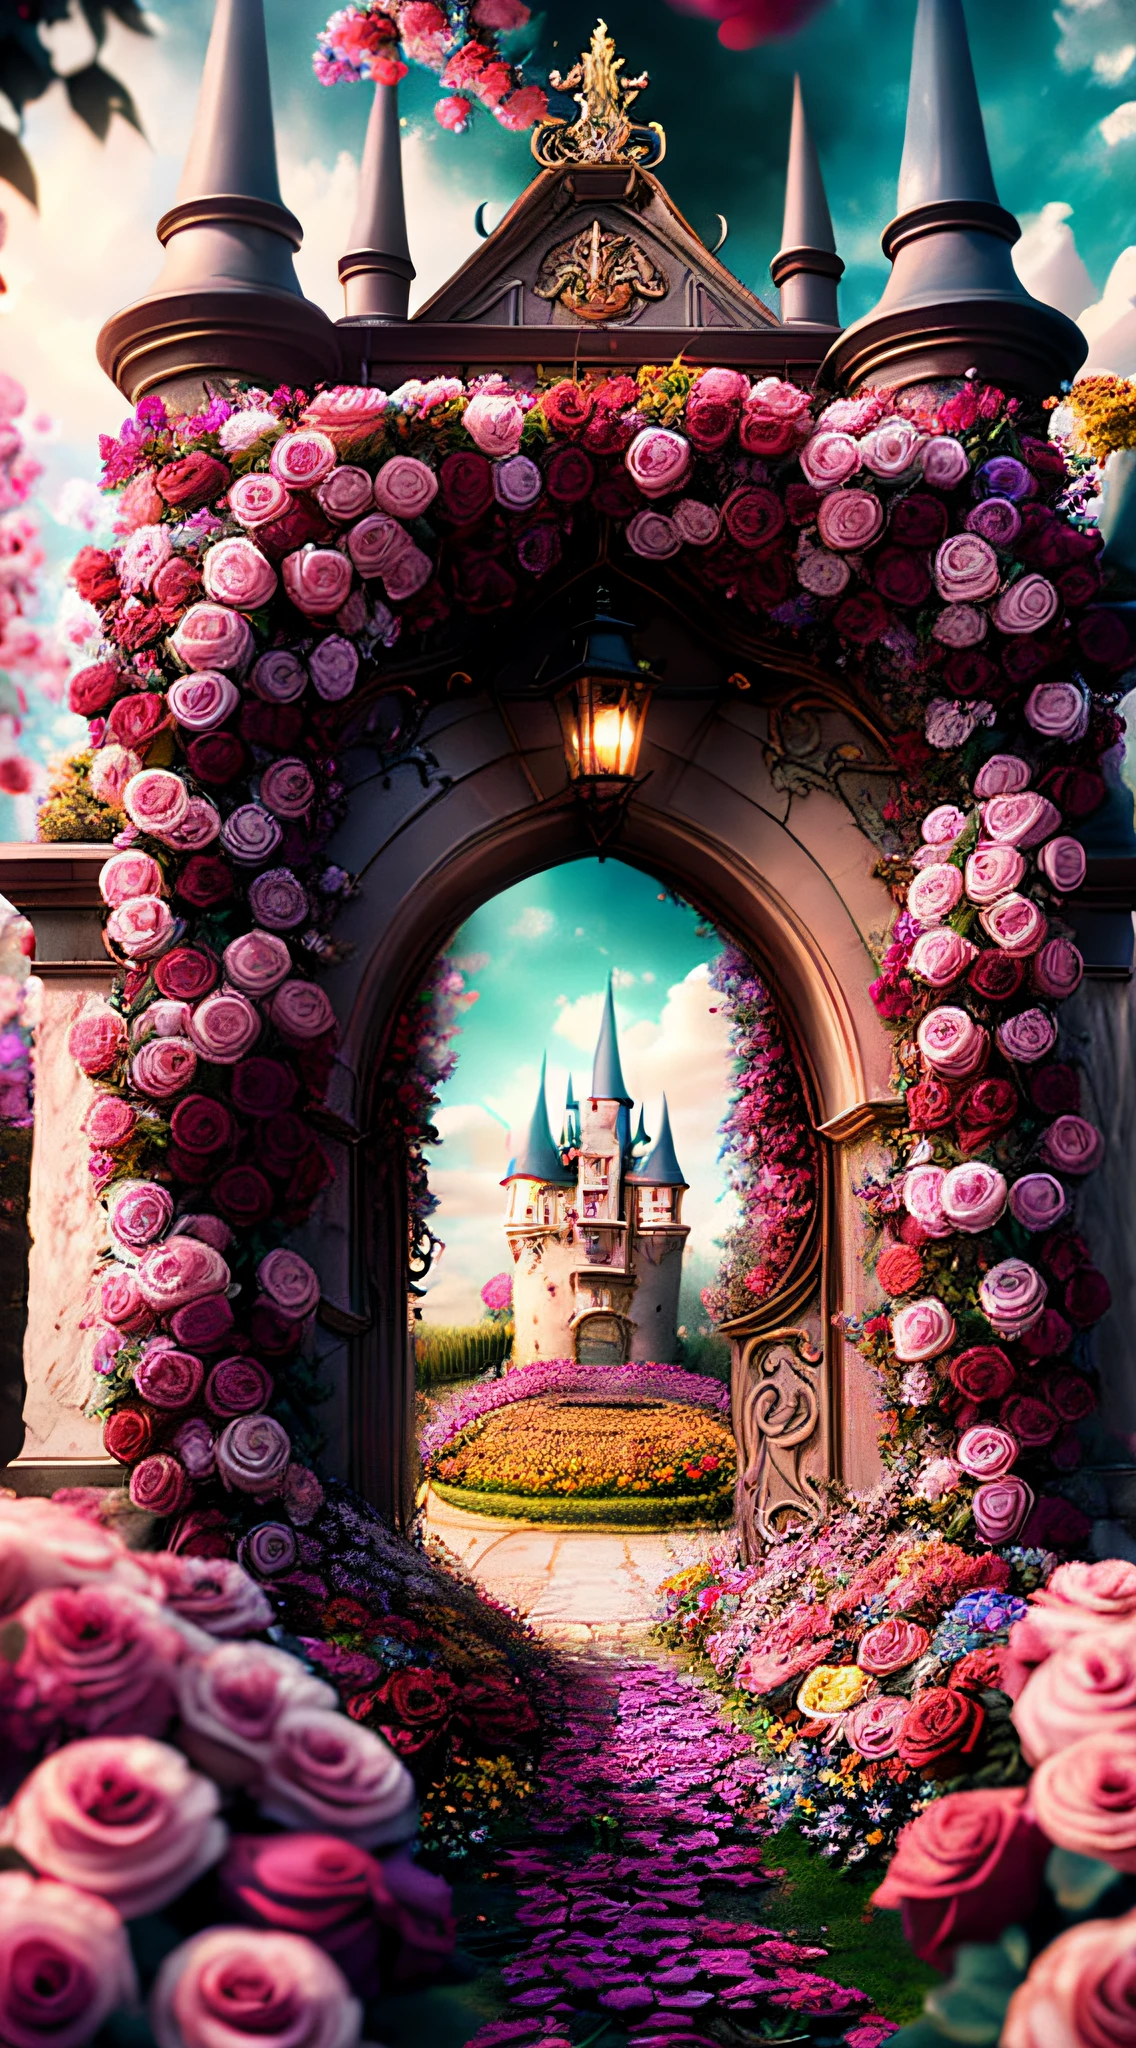 Фото (стиль цветочных ворот:1) Вход в замок утопает в цветах, Дисней, Роза, кинематографический, Сюрреалистический, HD, прохладные тона, Темная готика